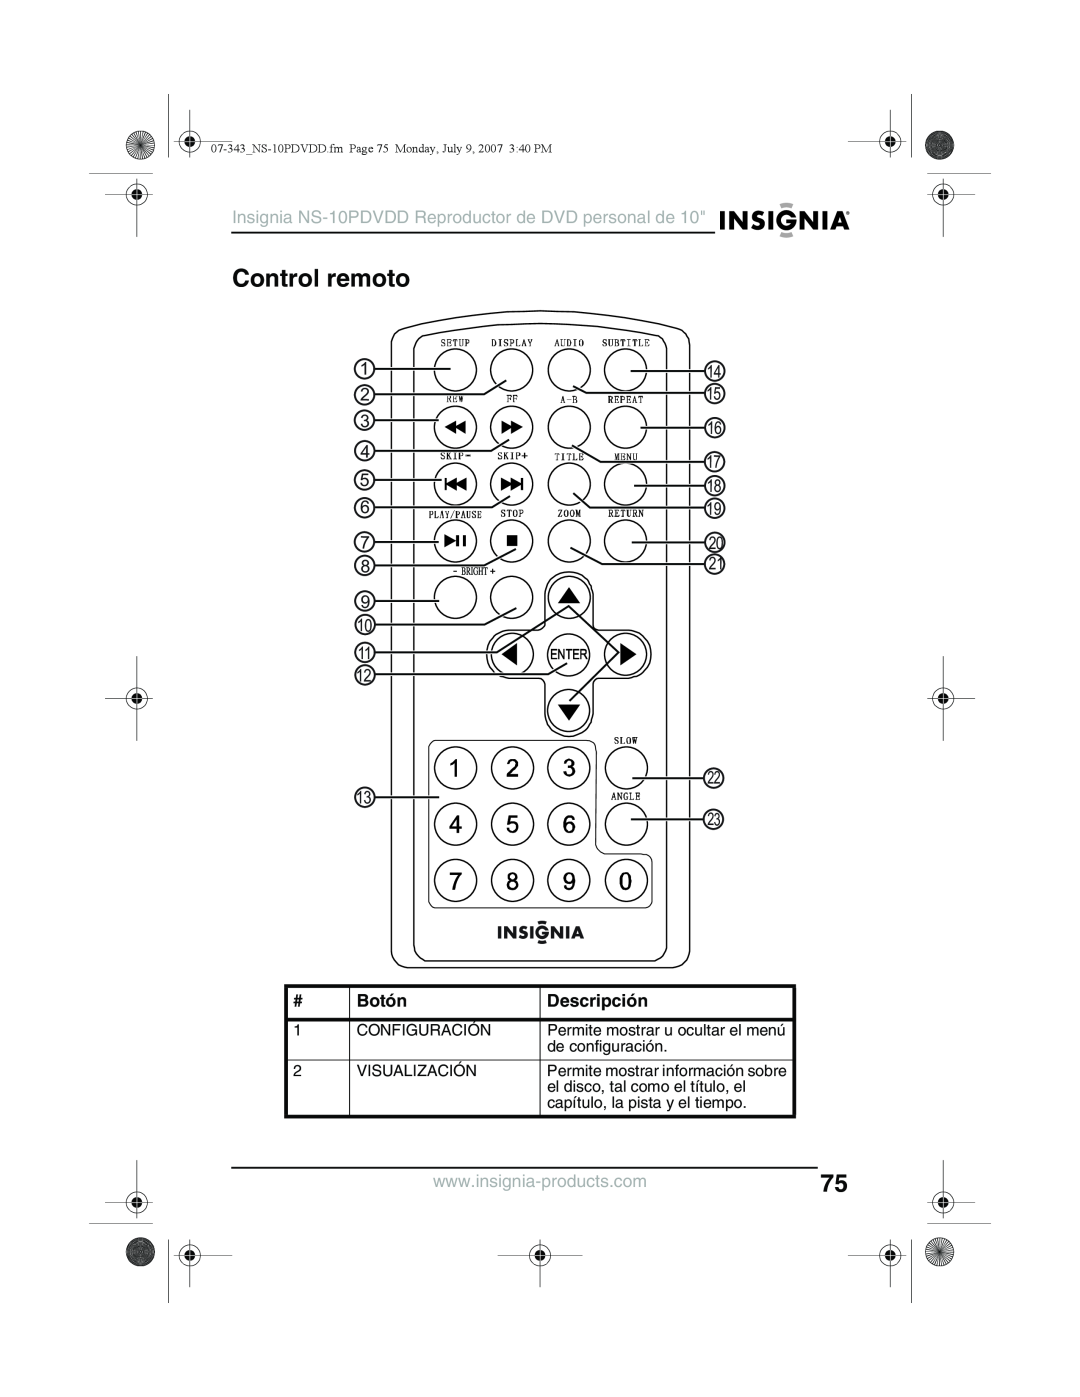 Insignia manual Control remoto, Botón, Insignia NS-10PDVDD Reproductor de DVD personal de, 1 2 4 5, 17 18, Descripción 